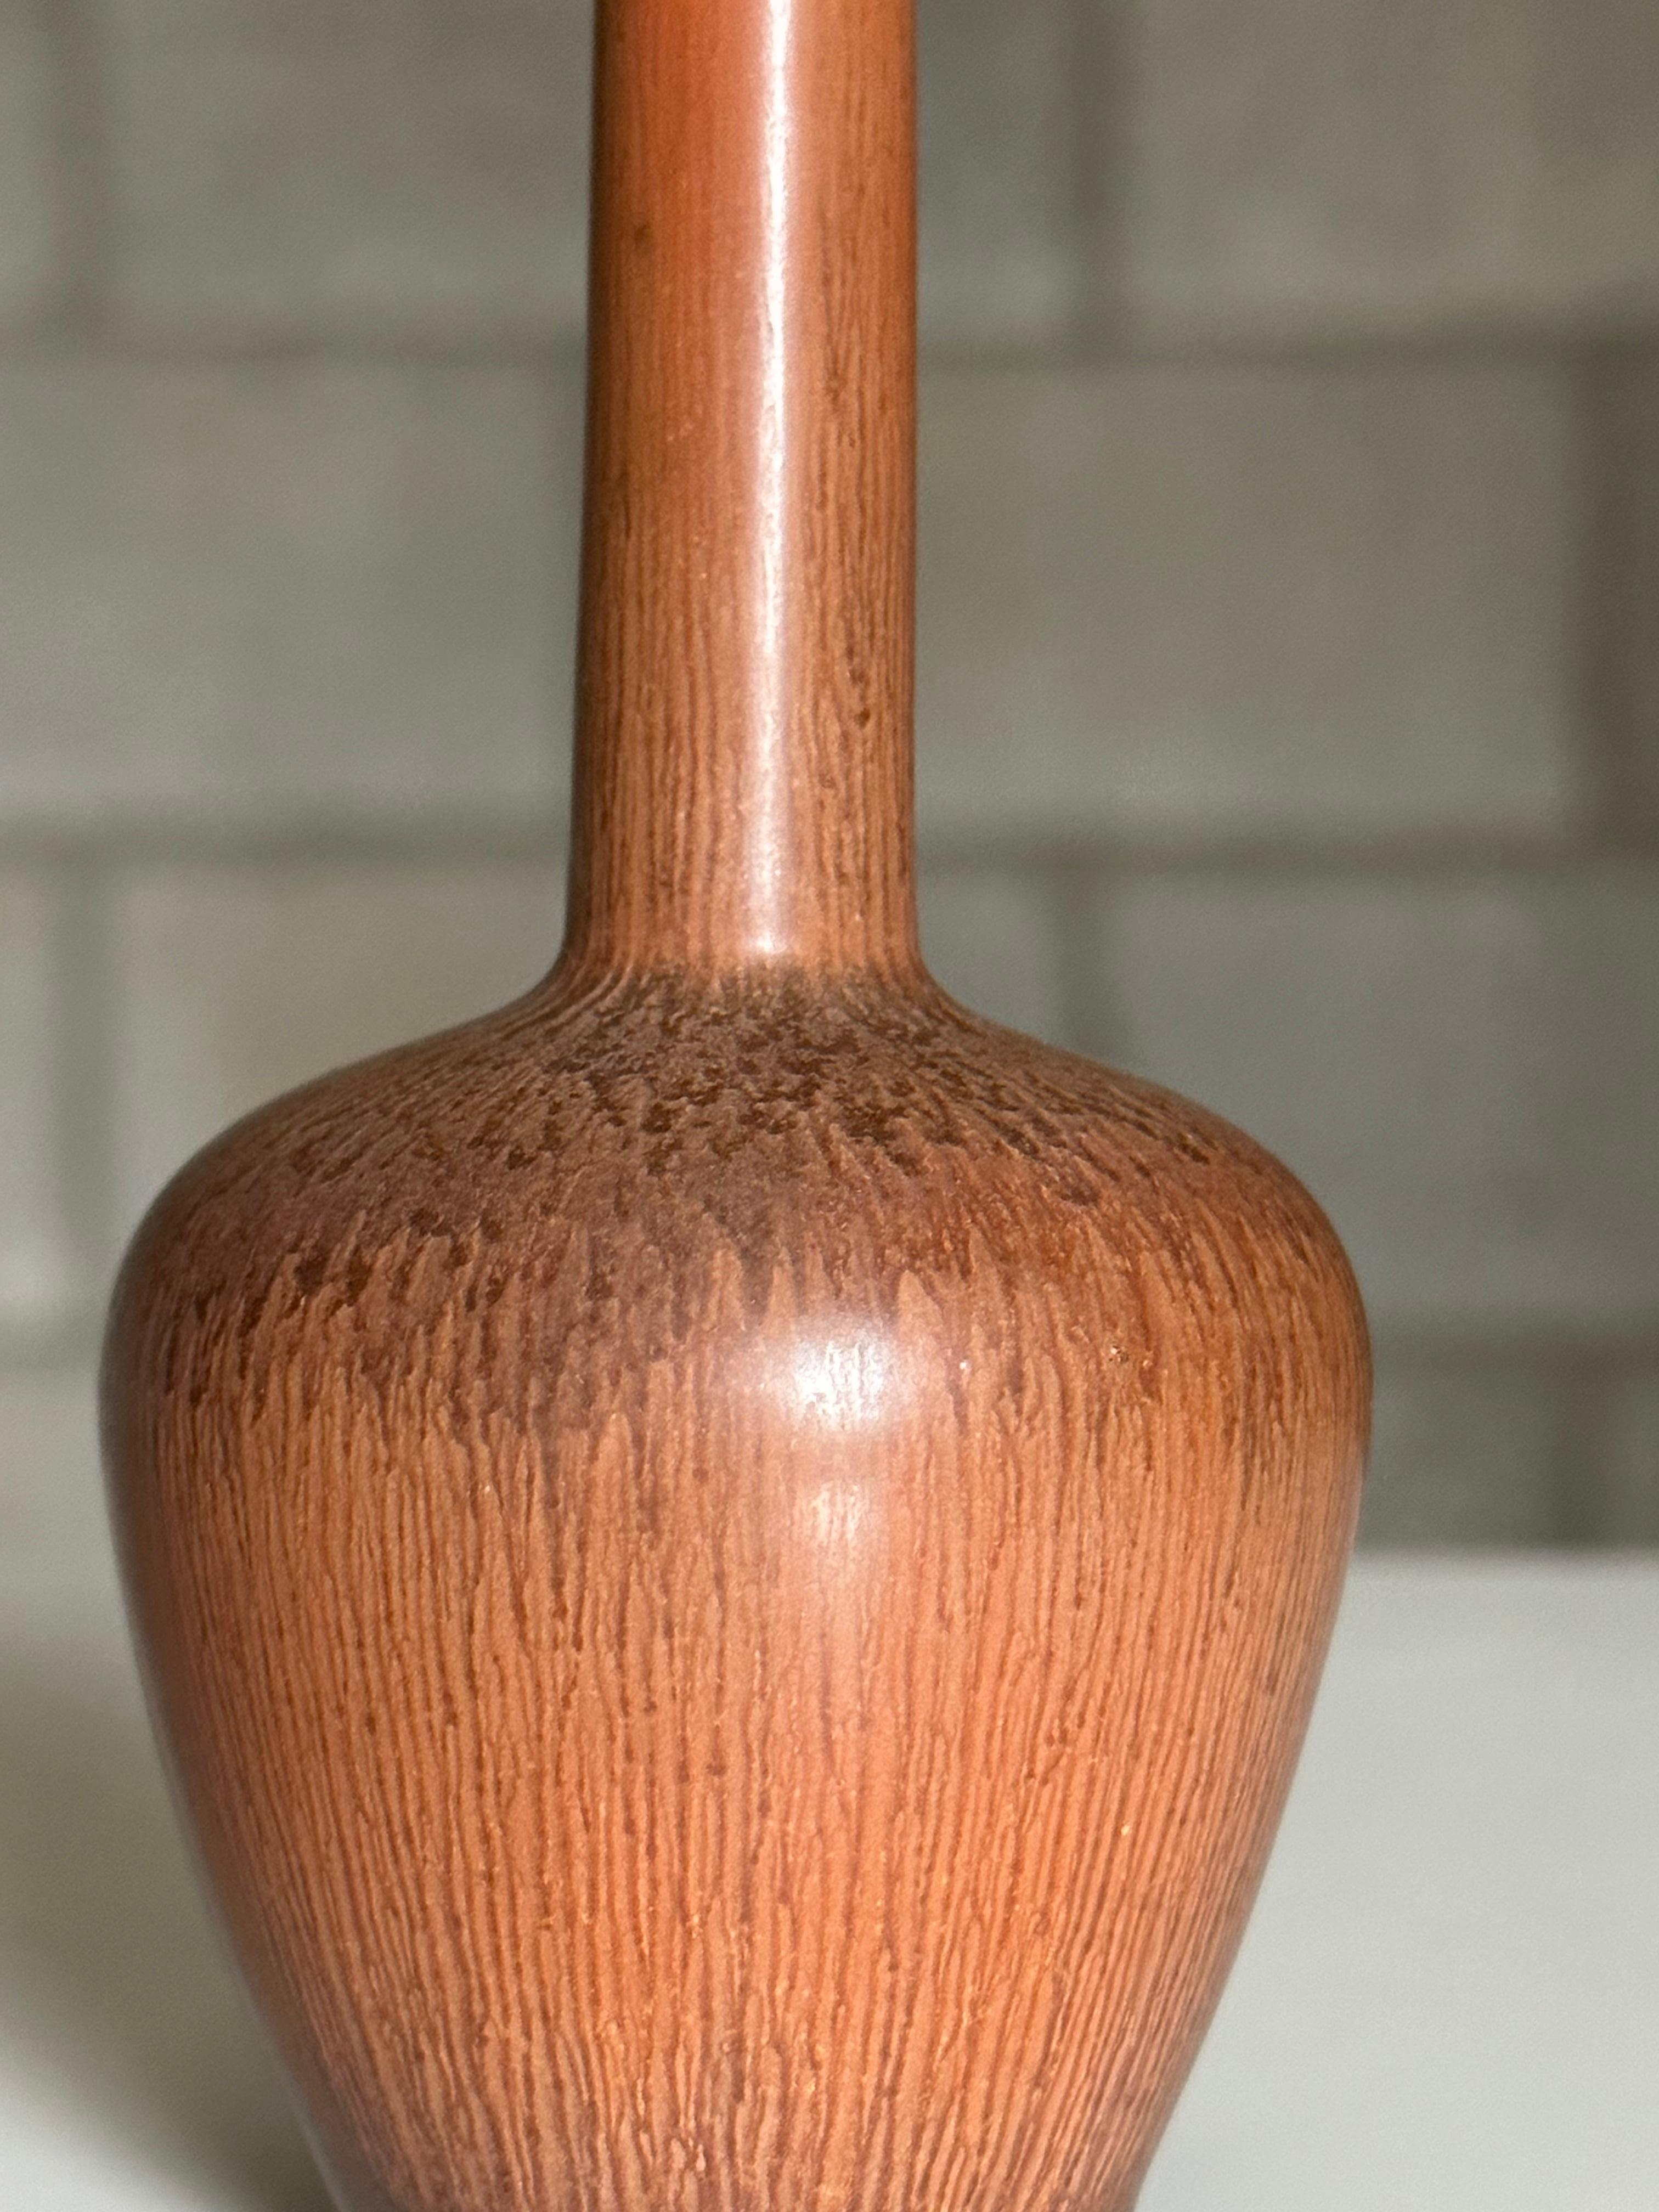 Eine wunderschöne kleine Vase, entworfen von Carl-Harry Stålhane für Rörstrand. Er hat einen bauchigen Körper und einen längeren dünnen Hals. Atemberaubende Terrakotta-Farbe, um die Vase zu vervollständigen.